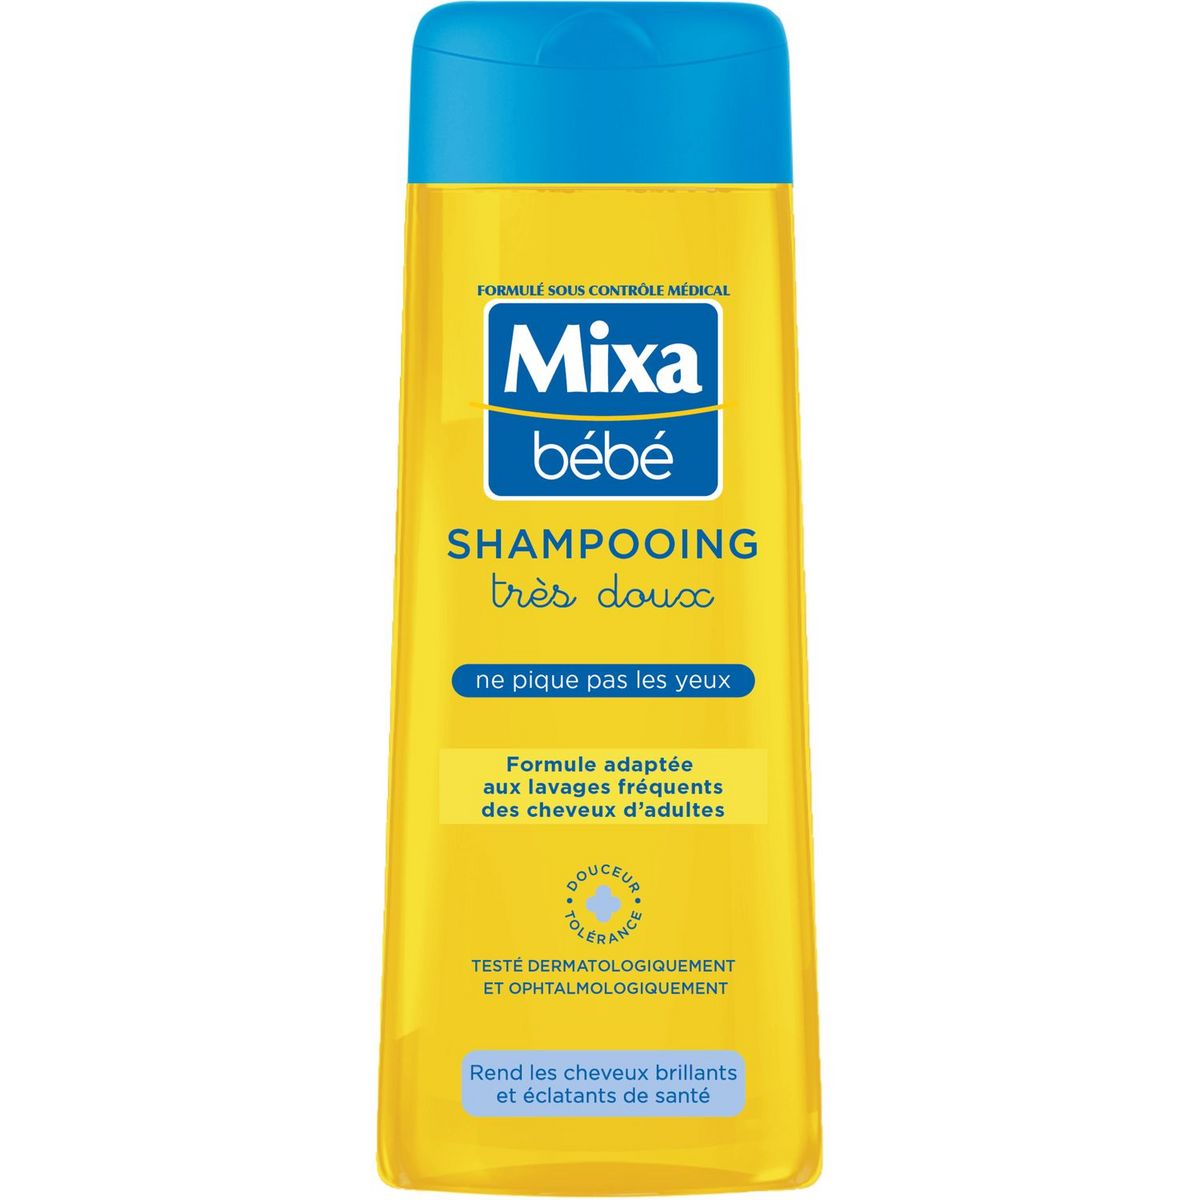 Mixa Bebe Shampoo extra mild 250ml